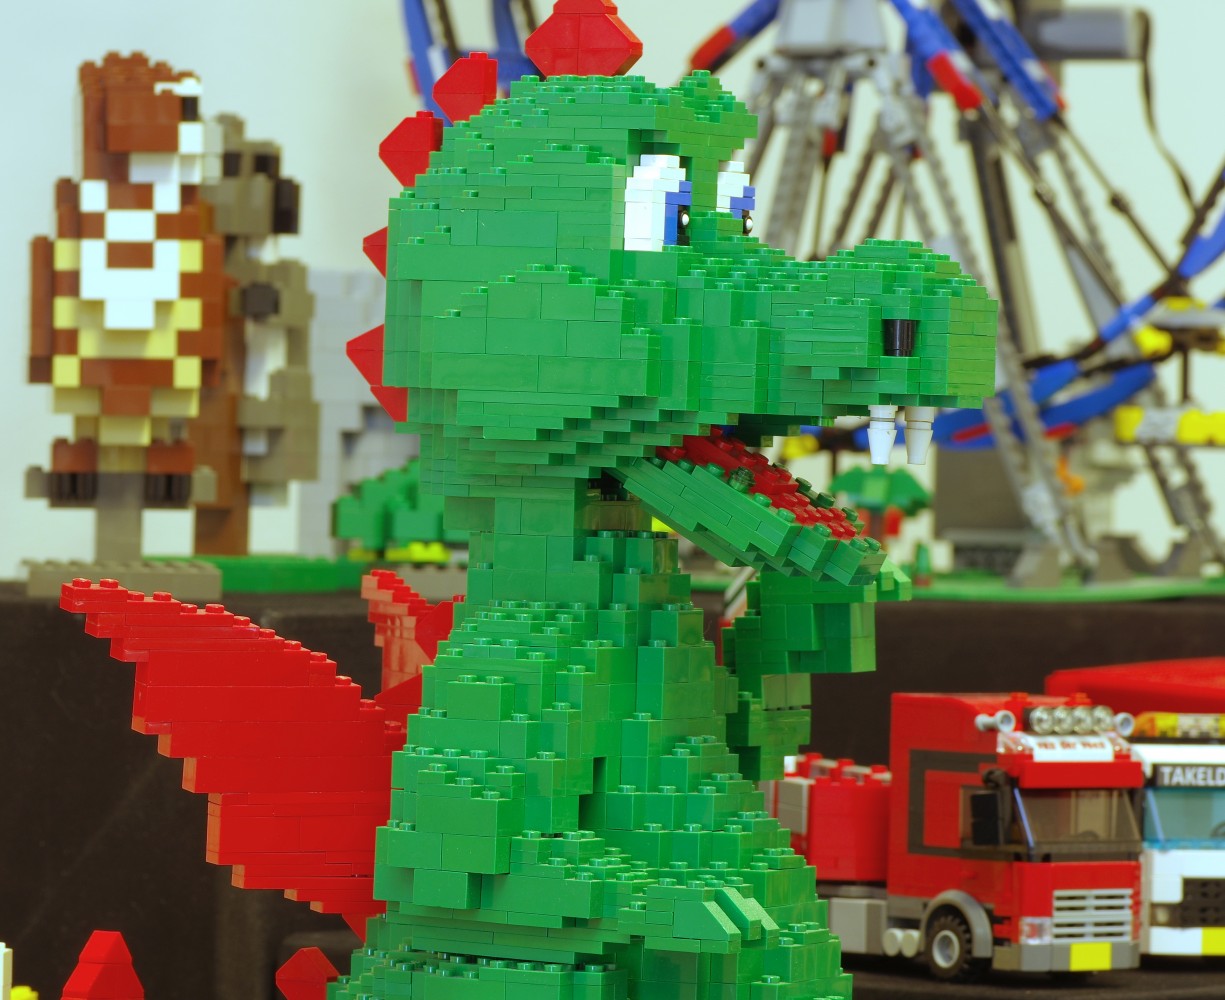 belangrijk kleding stof pond Lego festijn met bouwsteentjes 2019 - Museum.frl